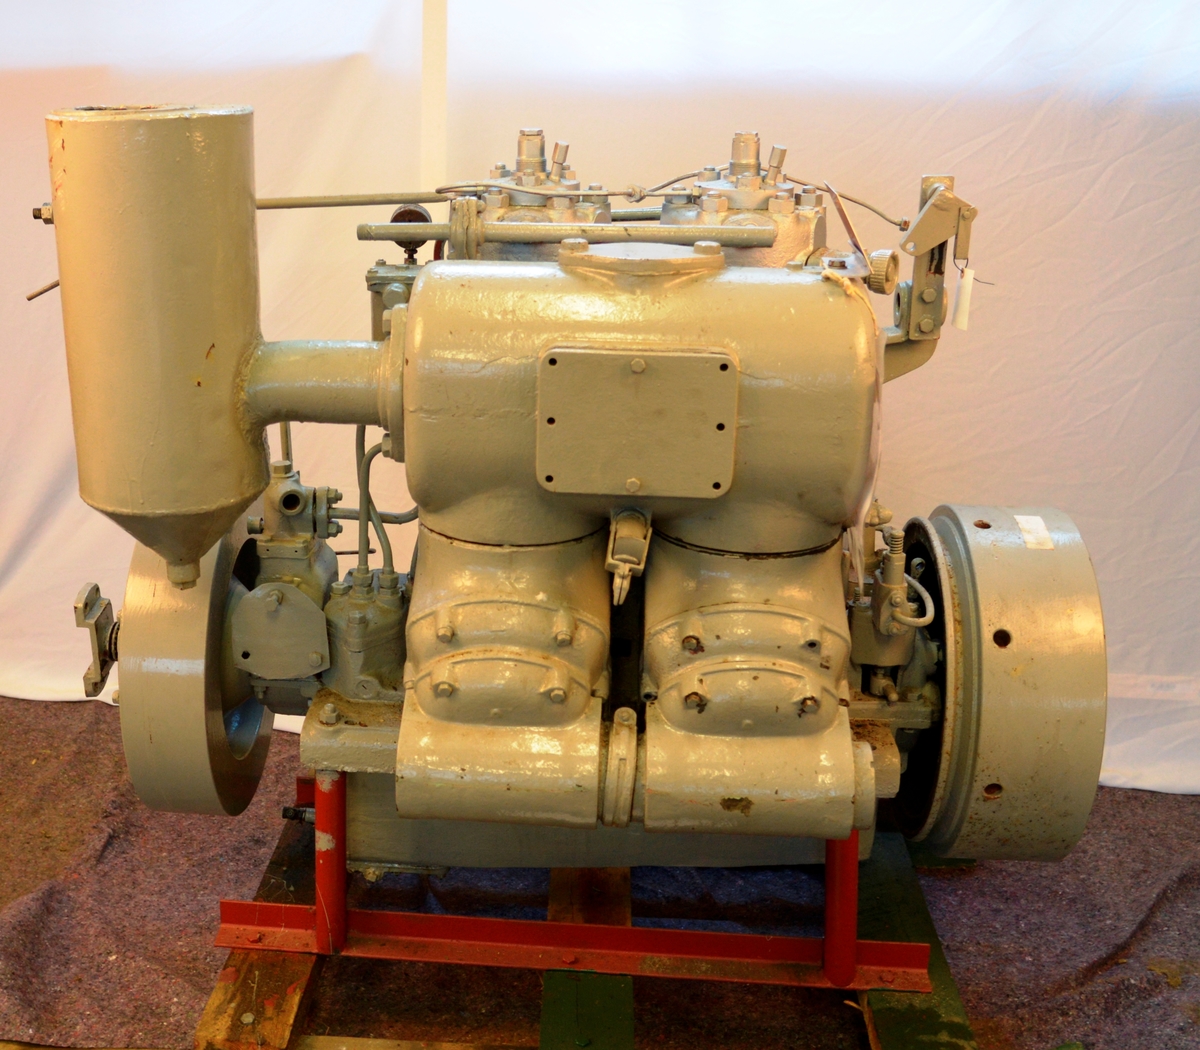 Deutz type SOM, 2-sylindret dieselmotor. 25 hk. 

Motoren er forløperen til dagens turbo- og kompressormotorer.